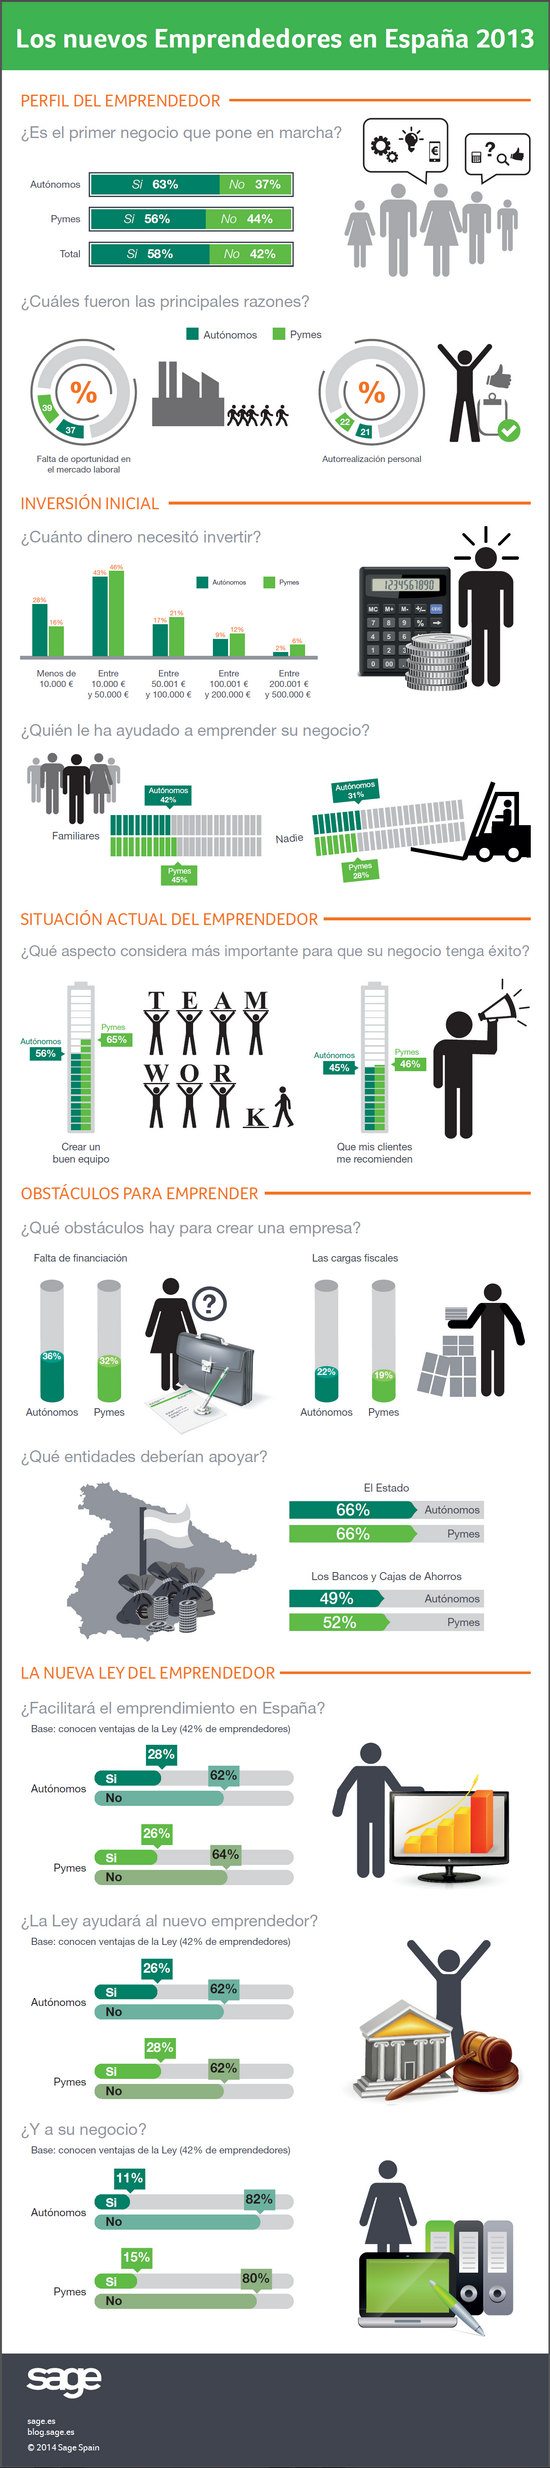 infografia-nuevos-emprendedores-espana-2013-blog-acens-cloud